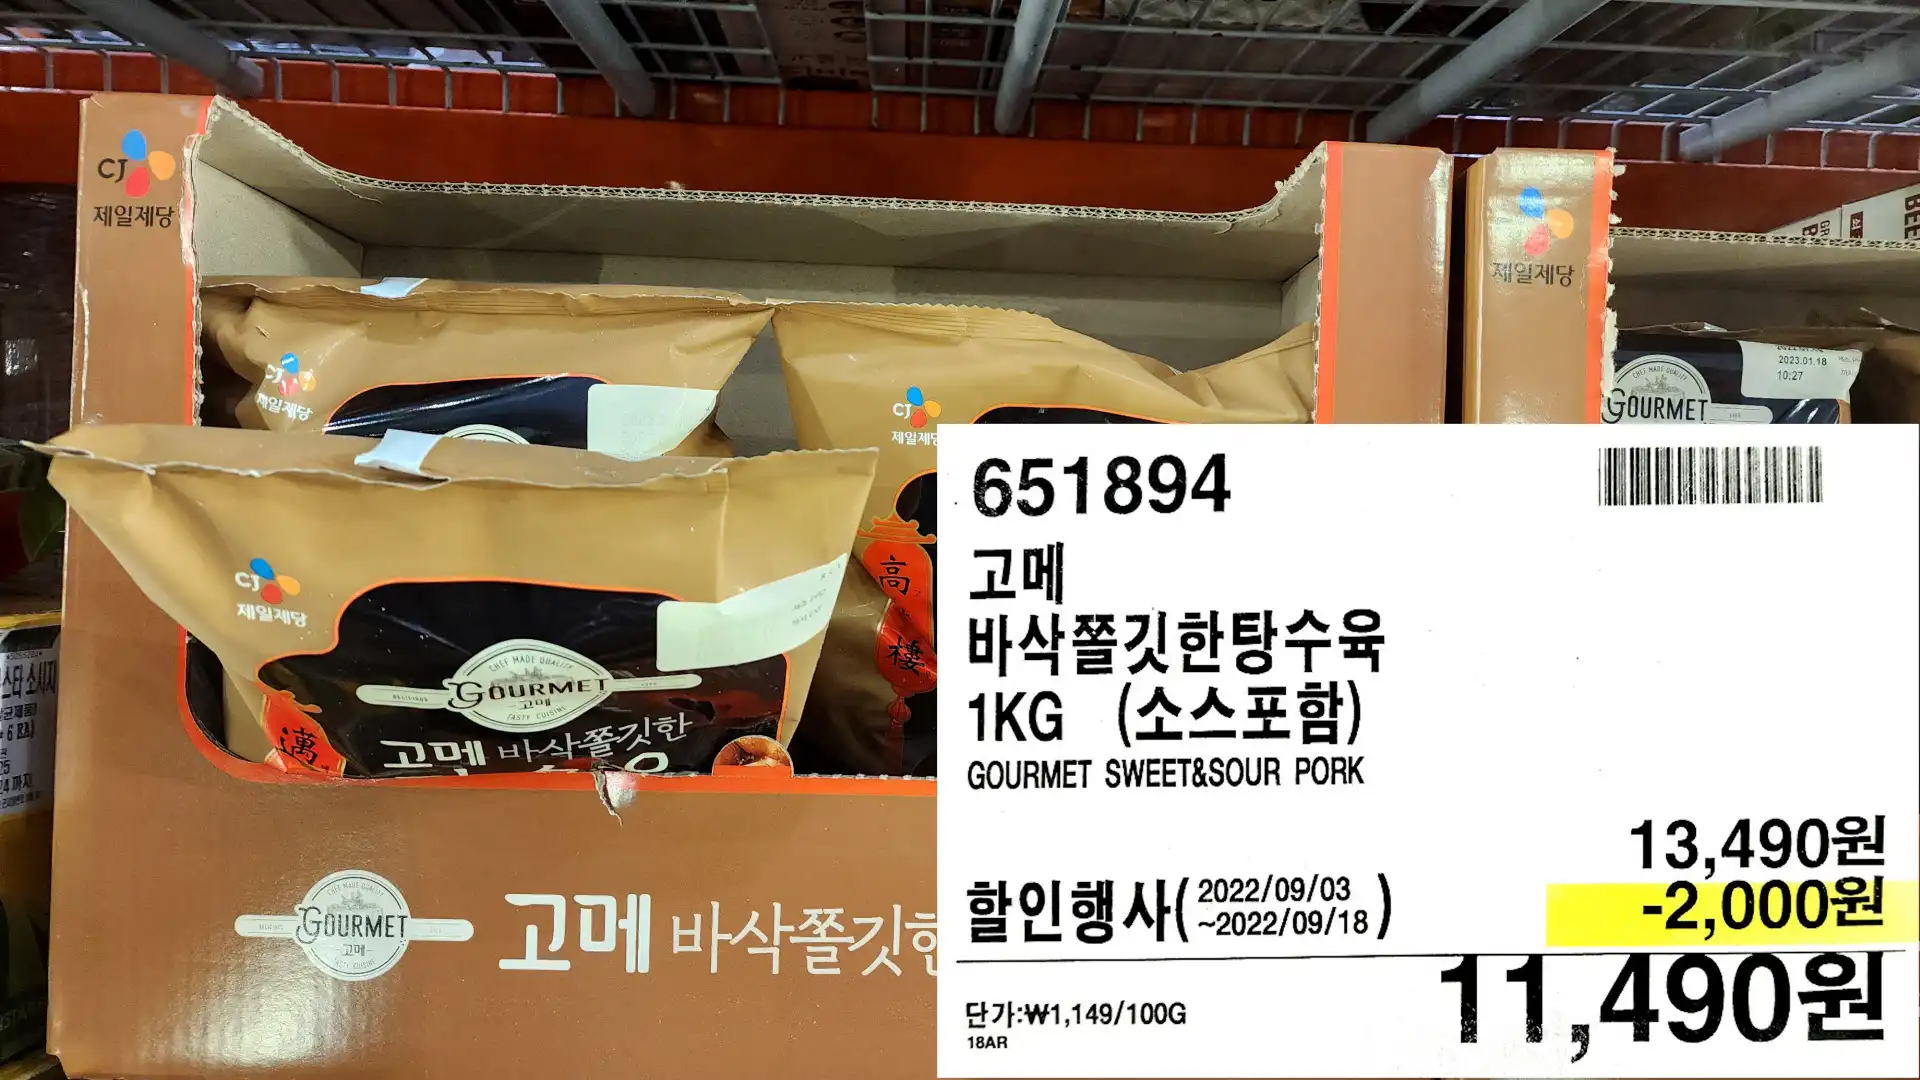 고메
바삭쫄깃한탕수육
1KG (소스포함)
GOURMET SWEET&SOUR PORK
11&#44;490원